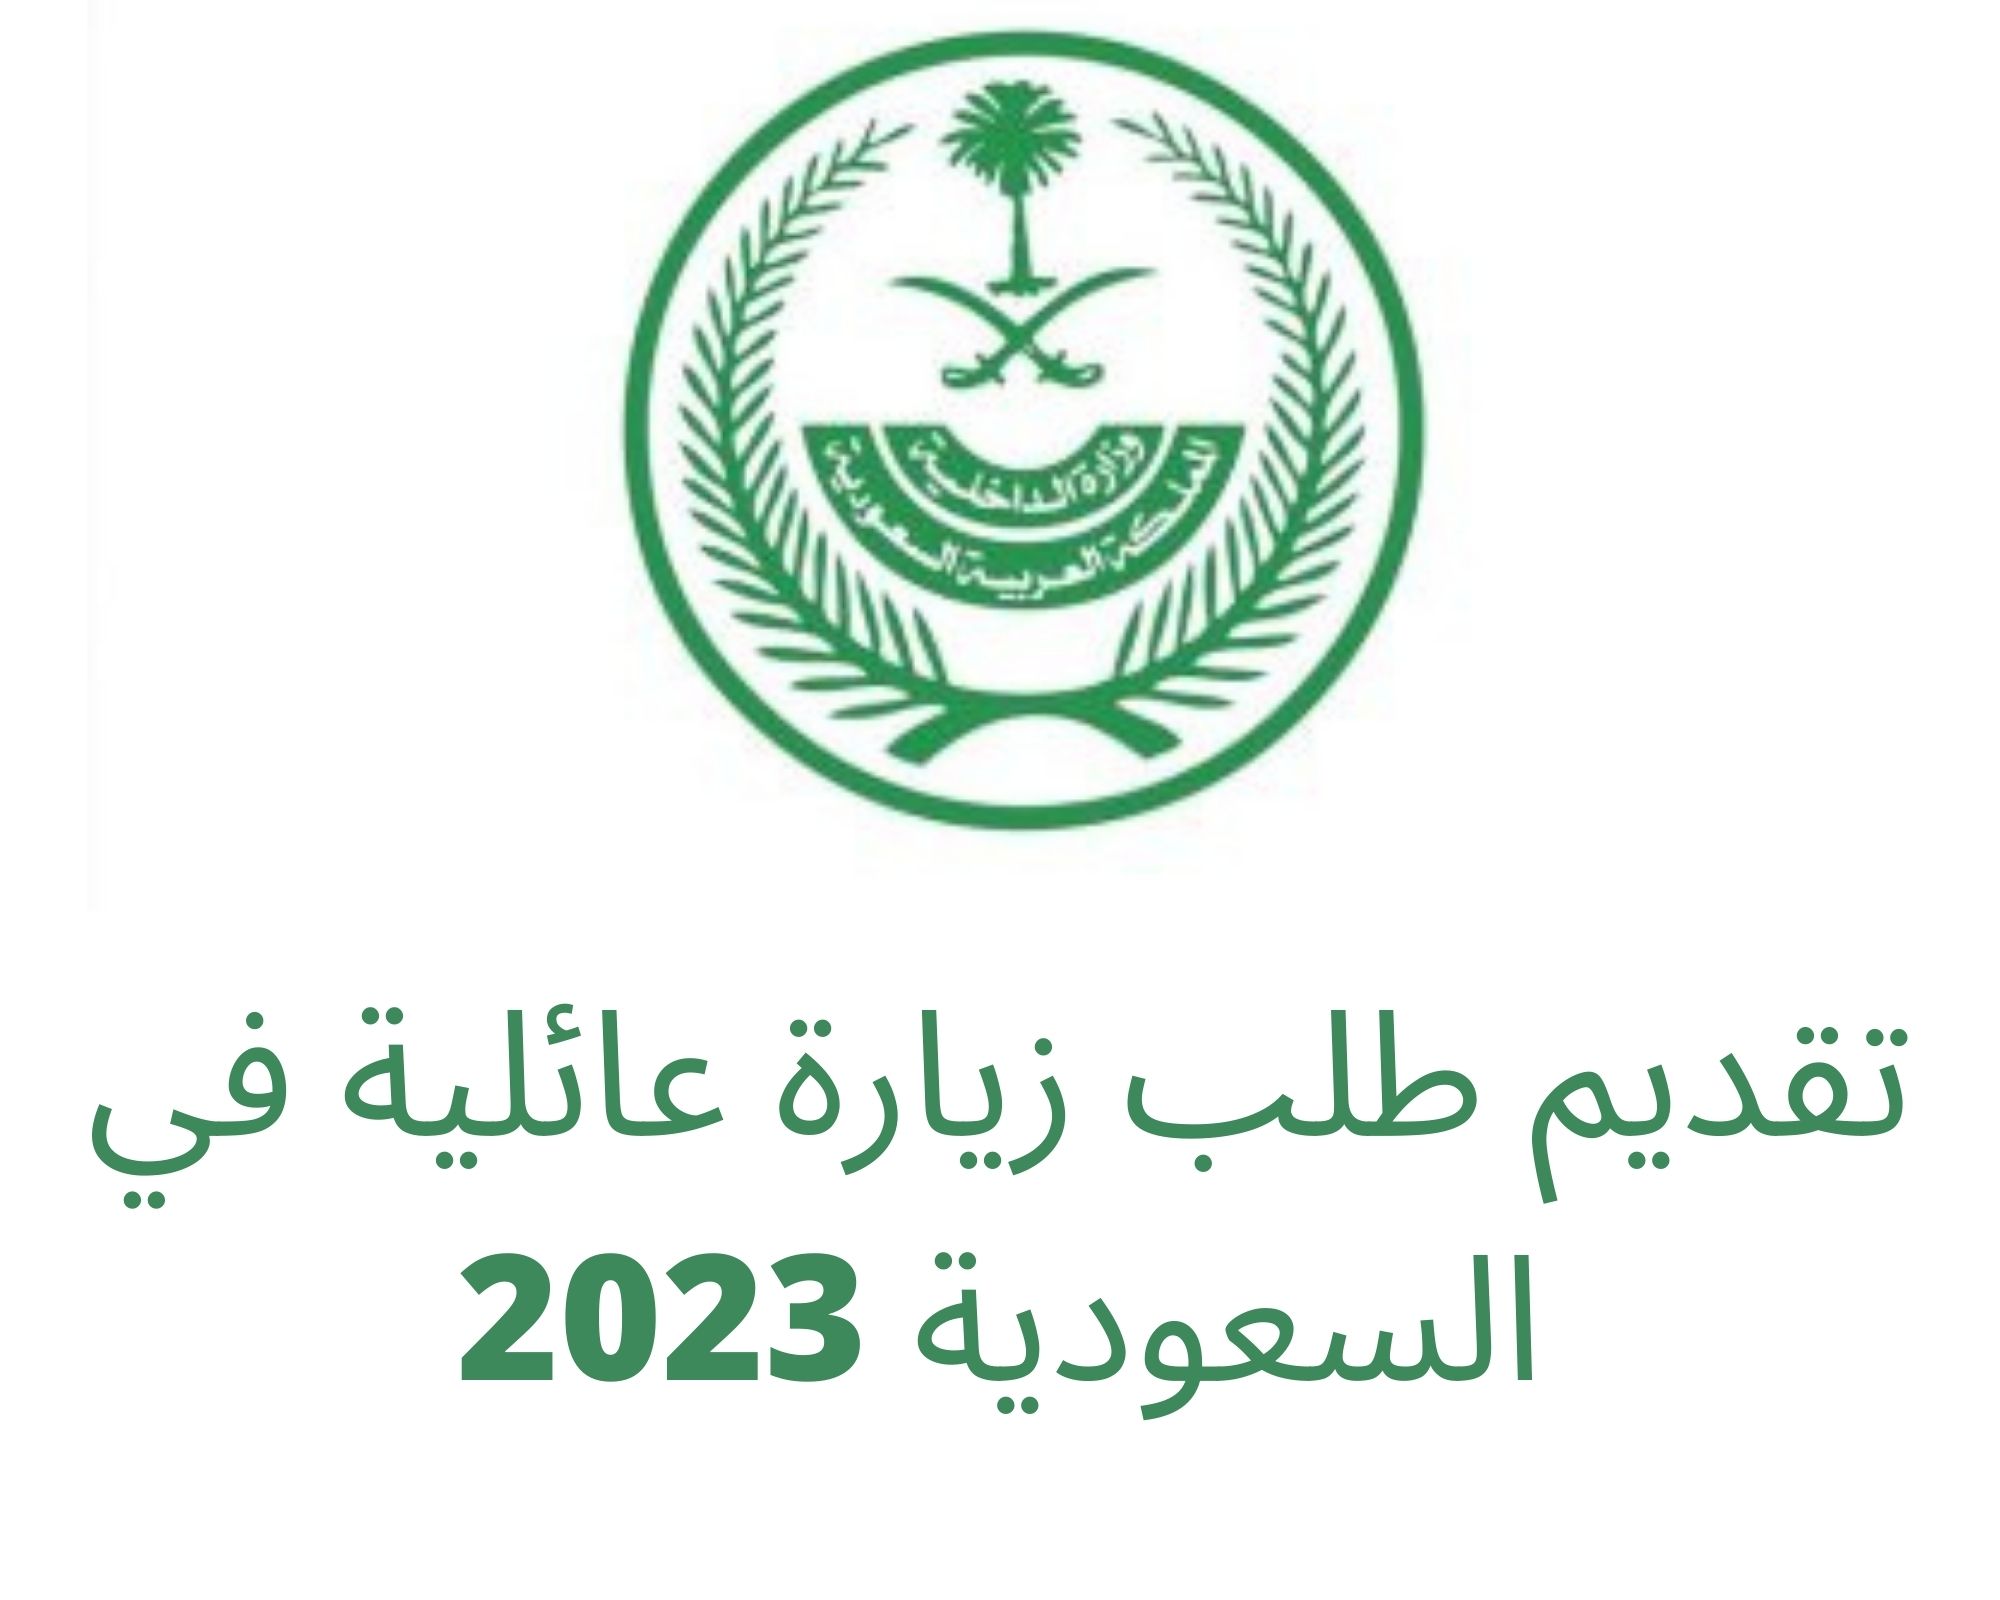 تقديم طلب زيارة عائلية في السعودية 2023 والرسوم المقررة